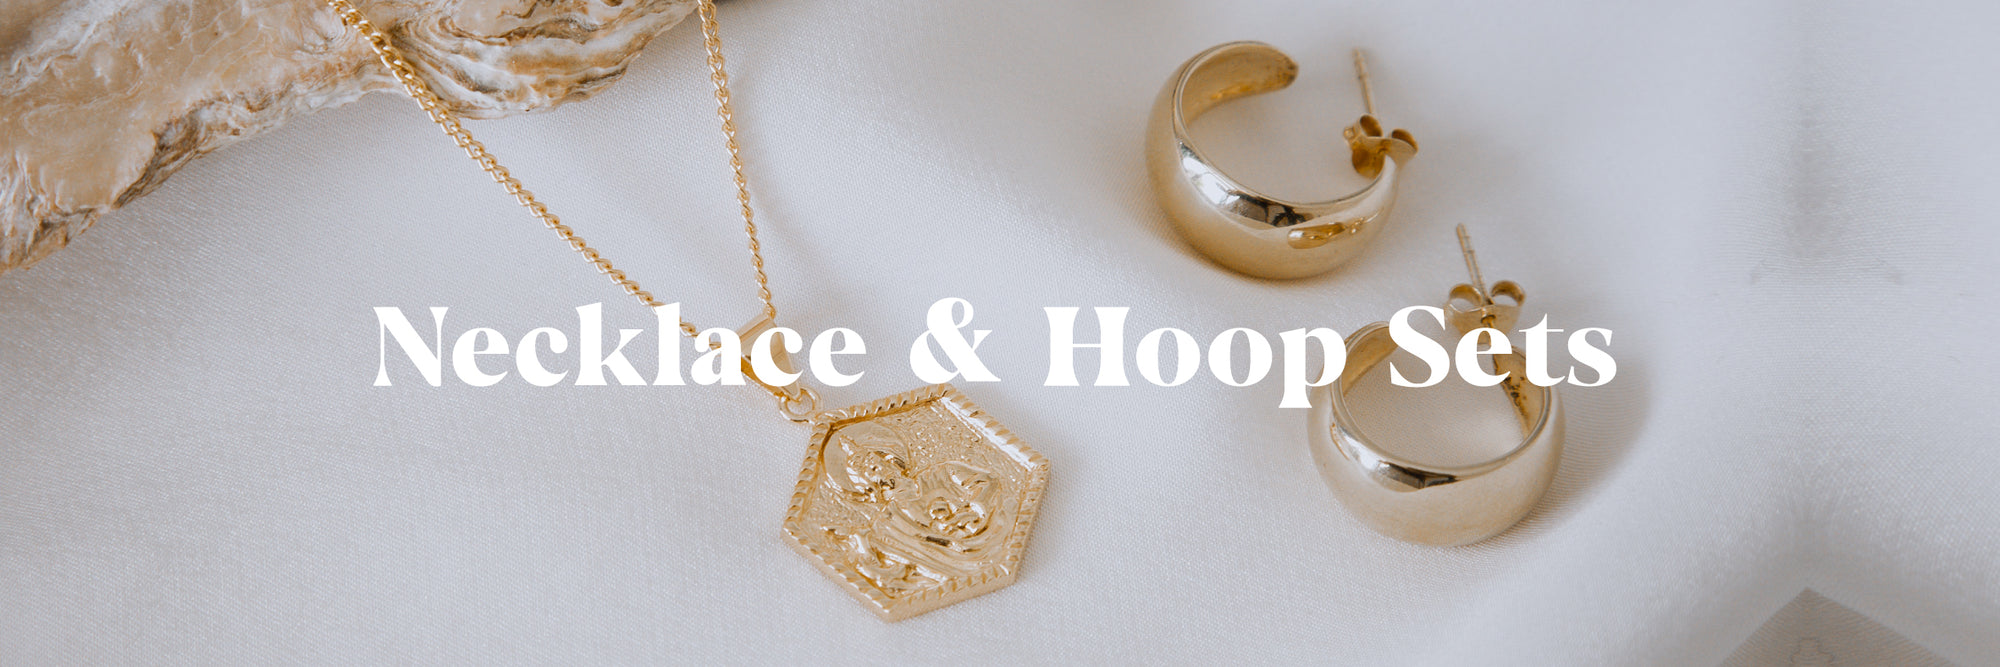 Necklace & Hoop Sets